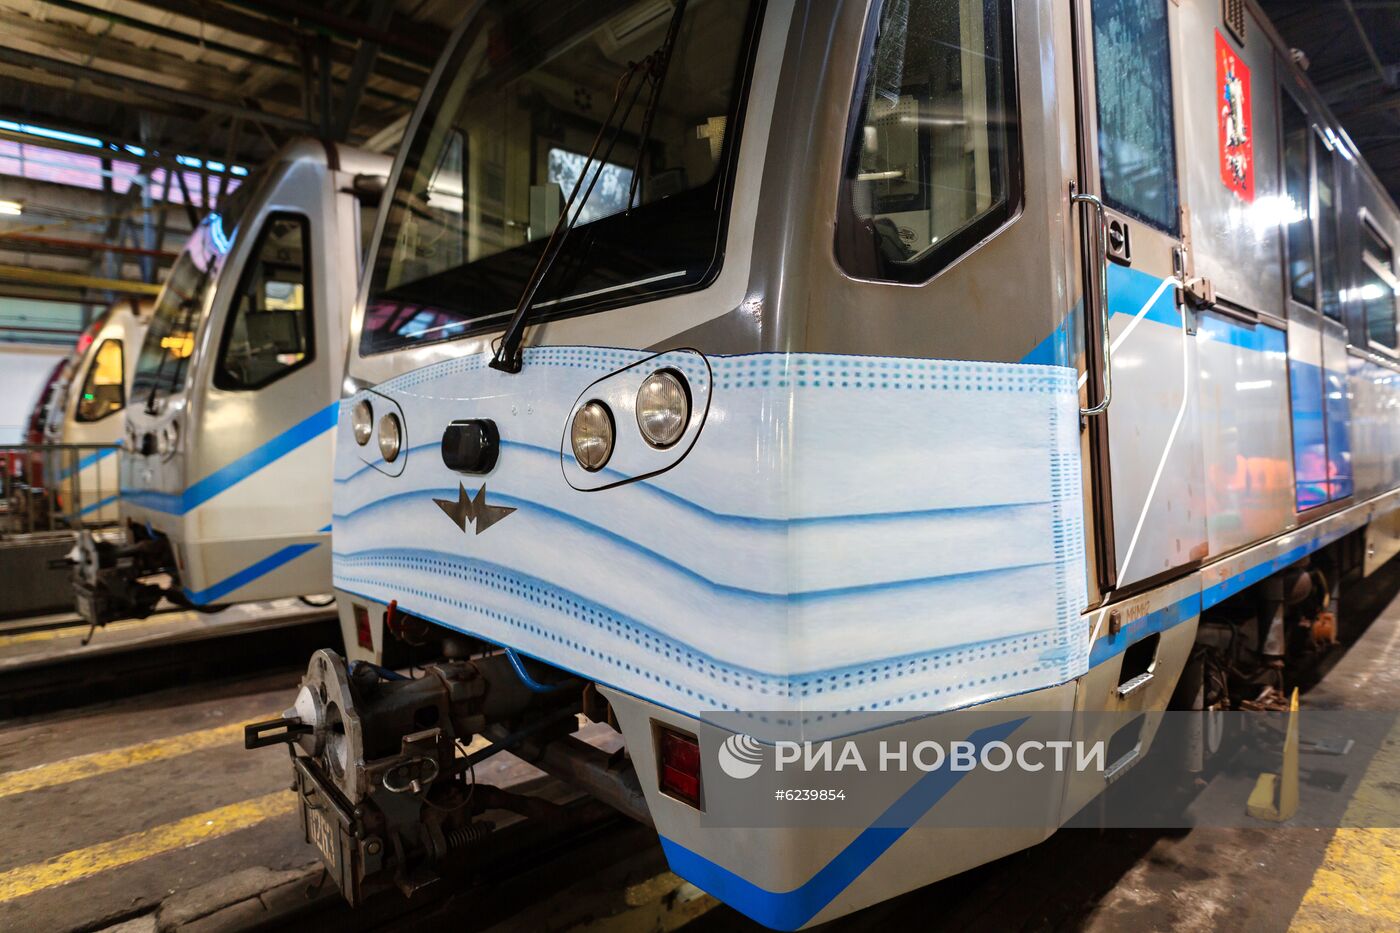 Поезд "в медицинской маске" запустили в московском метро